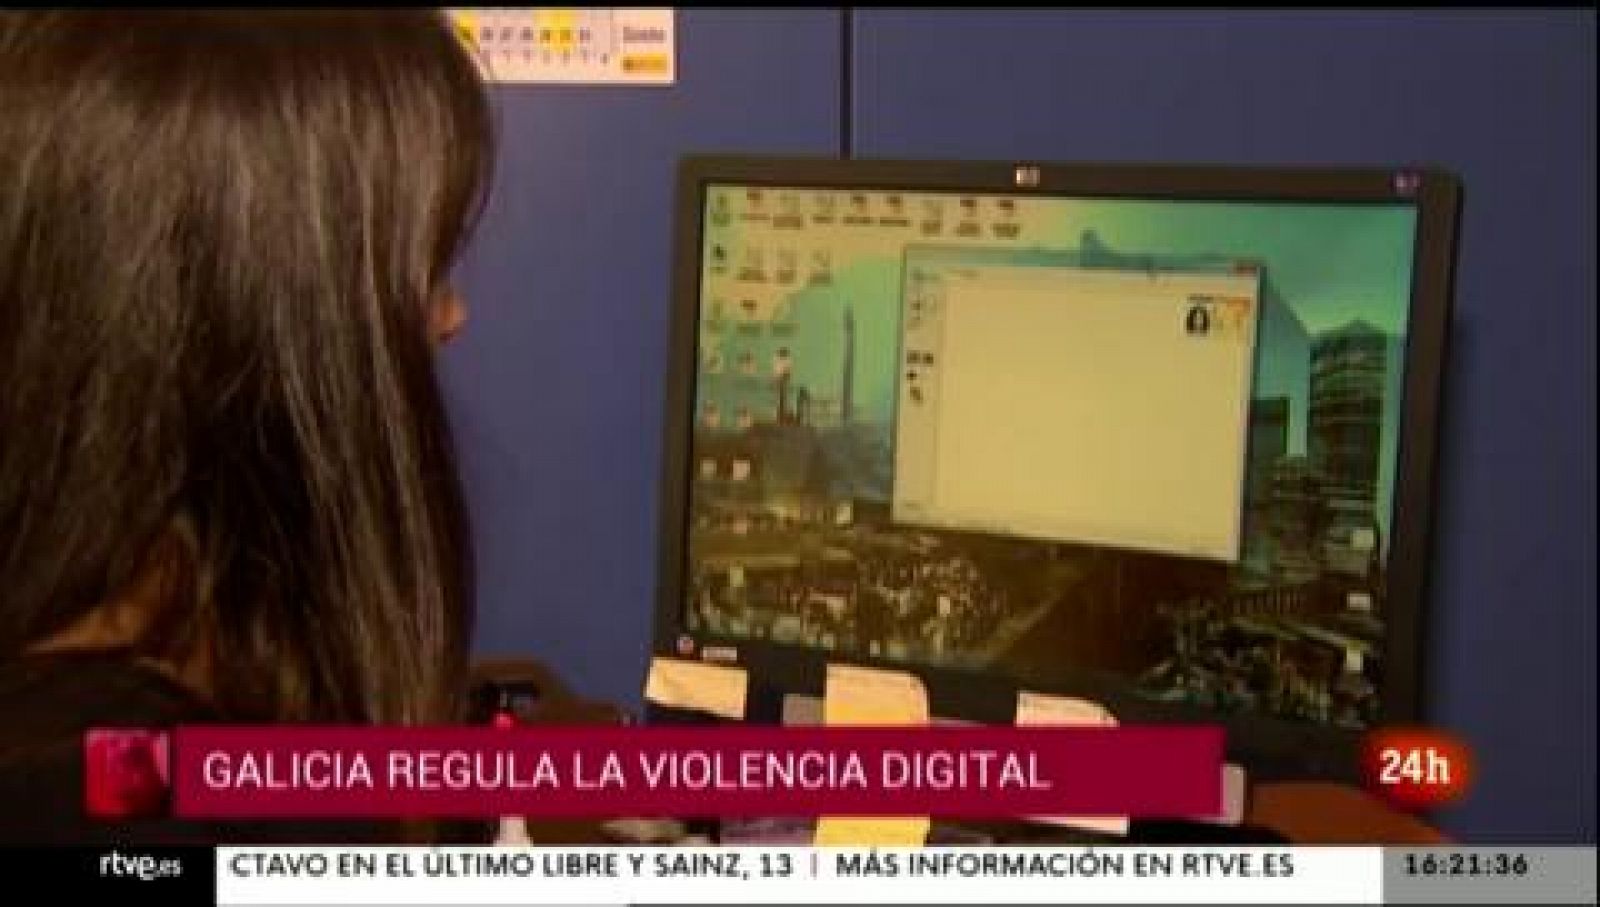 Parlamento - Otros parlamentos - Galicia regula la "violencia digital" - 26/06/2021